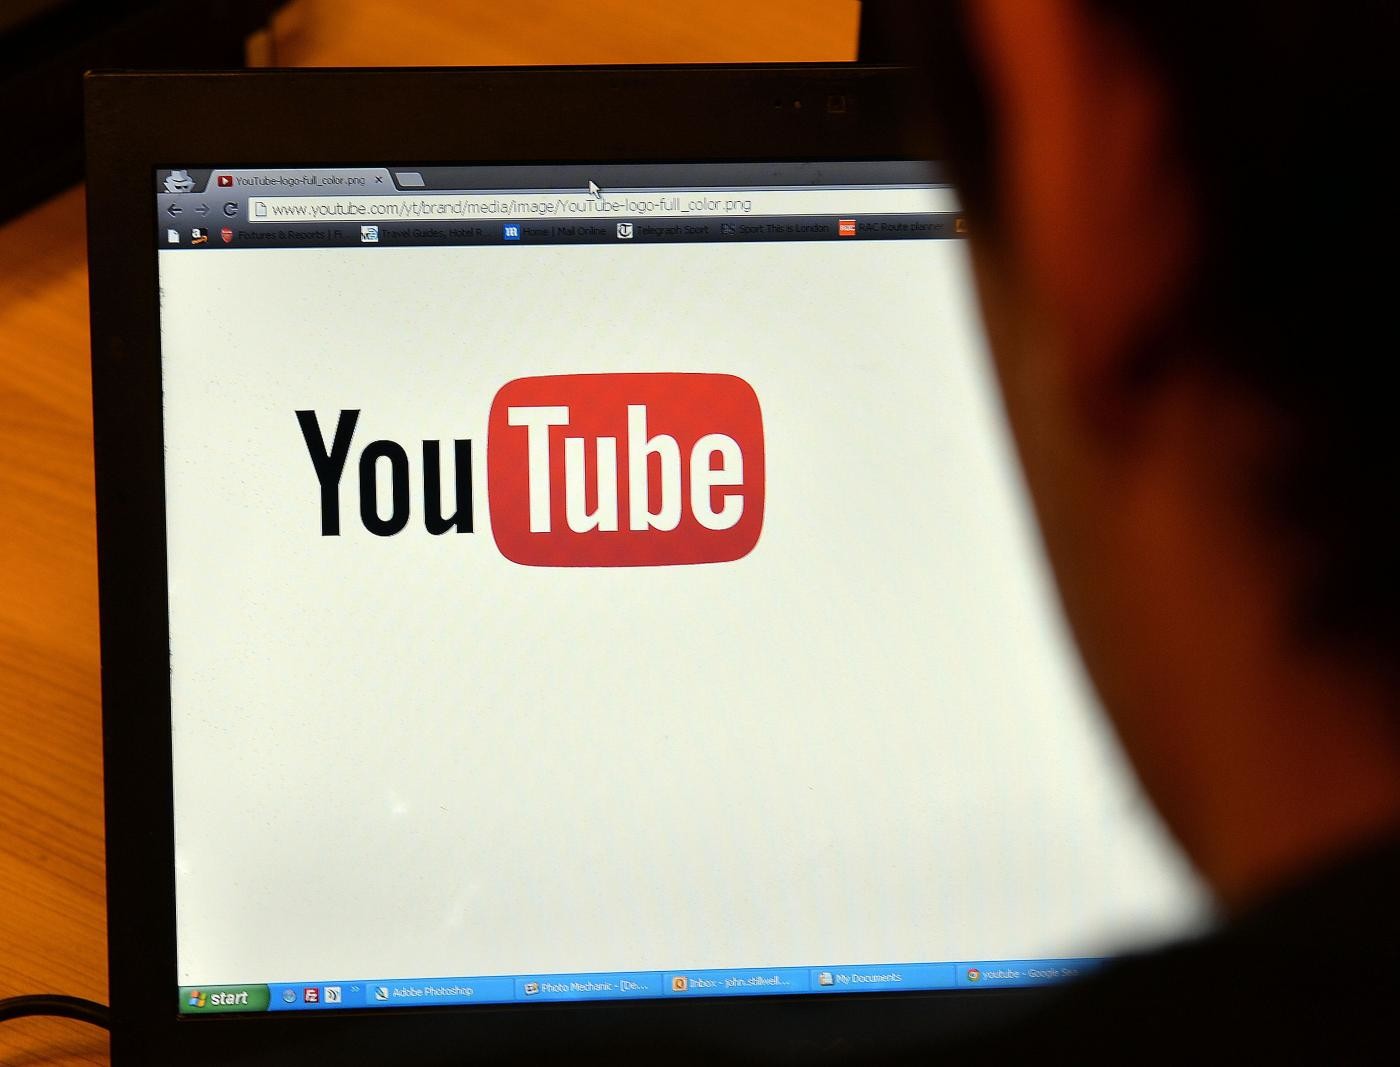 Youtube vieta video che promuovono razzismo e negano Olocausto